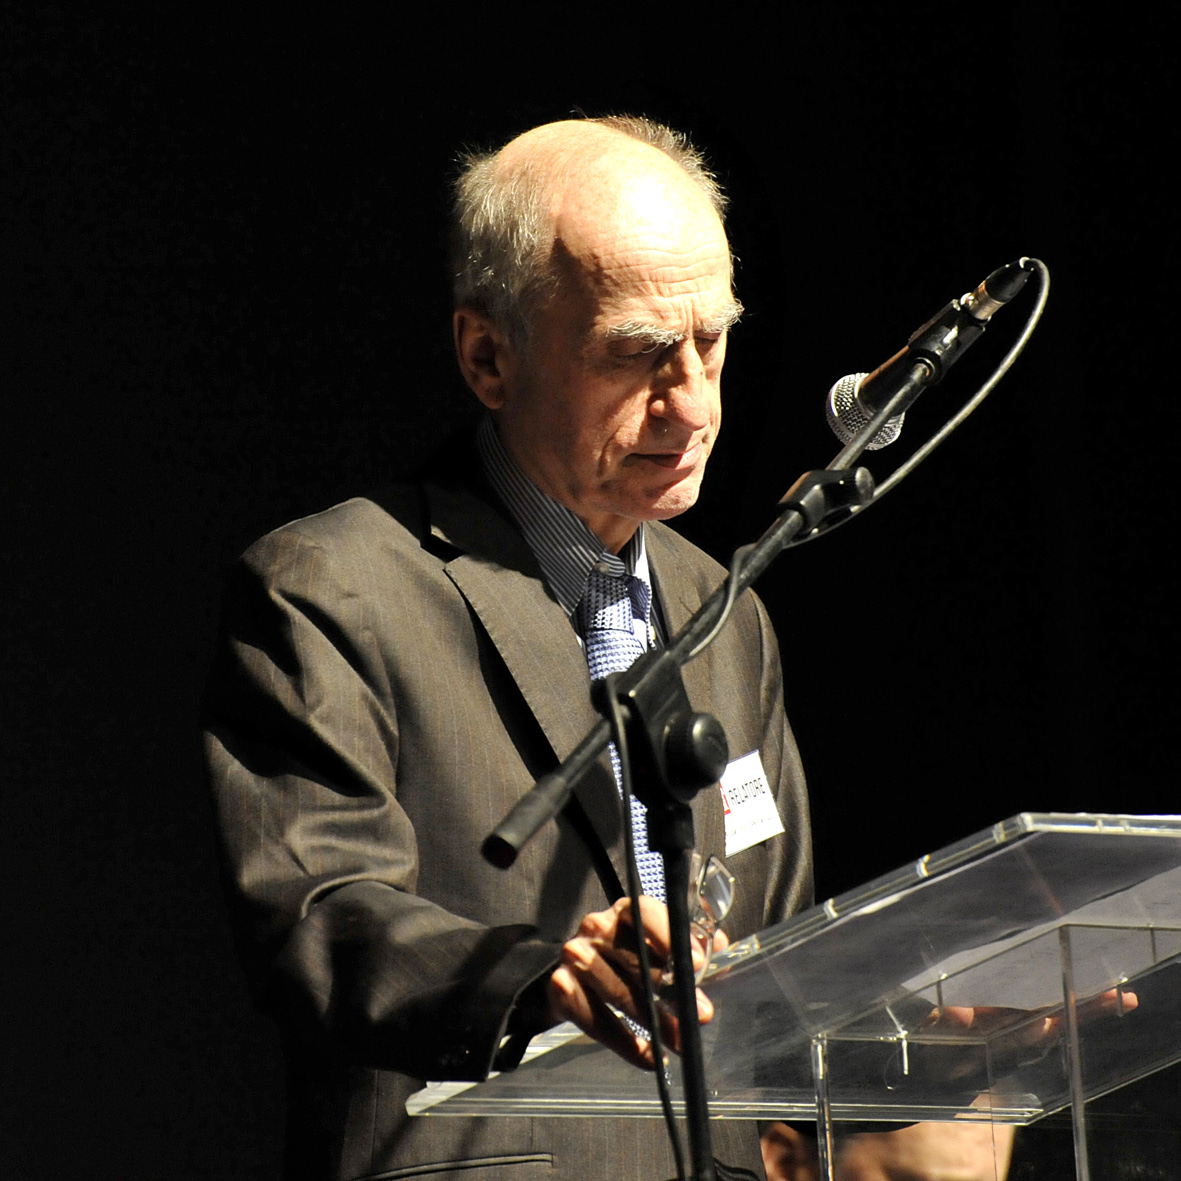 Alain Parguez Professore Emerito di Economia. Université de France-Comté at Besançon (Francia). Facoltà di Leggi, Scienze Politiche ed Economiche. Università di Ottawa, Canada.